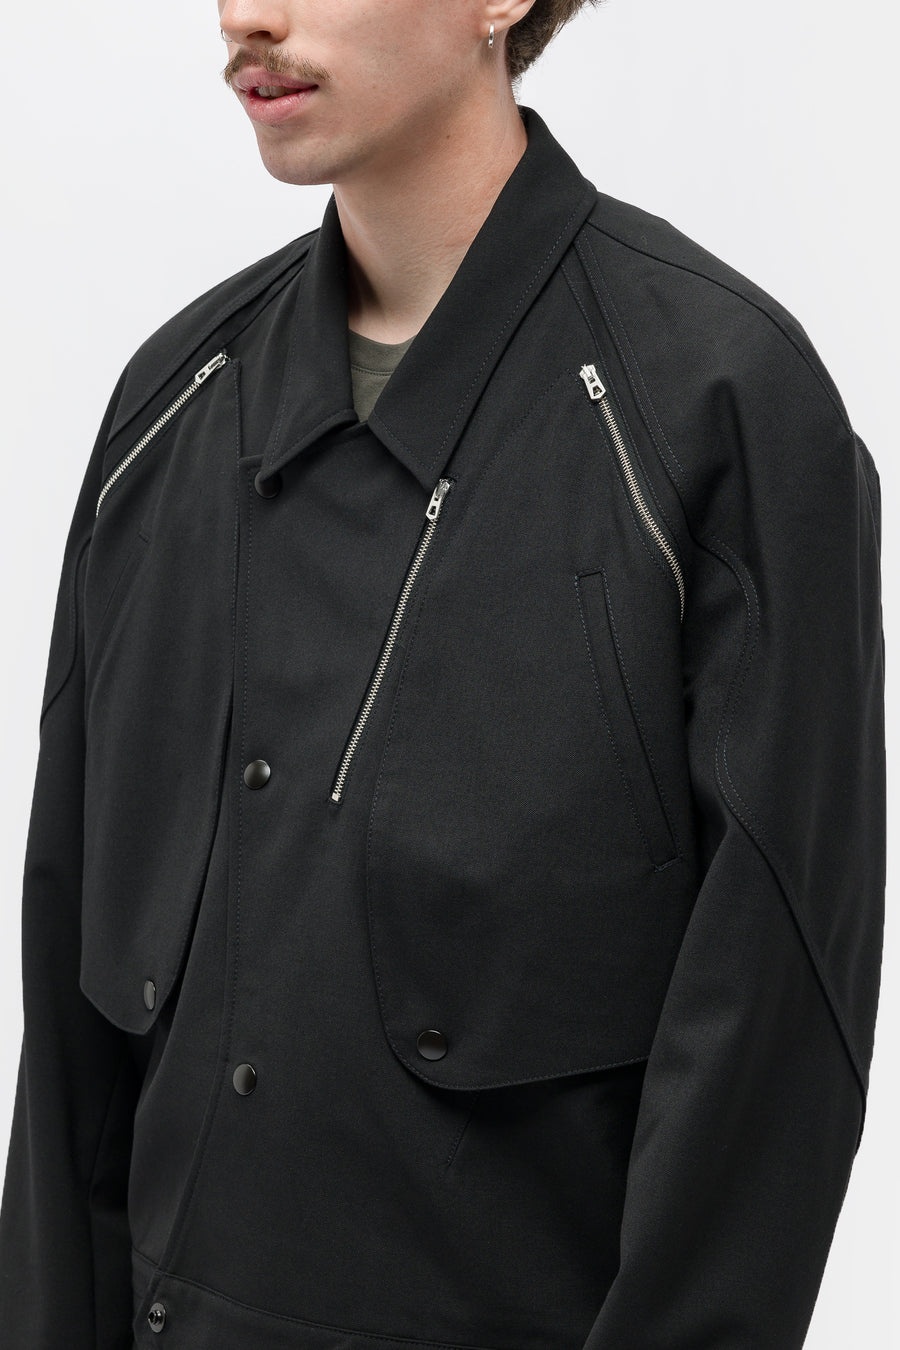 Tonino Utility Jacket in Black - 4